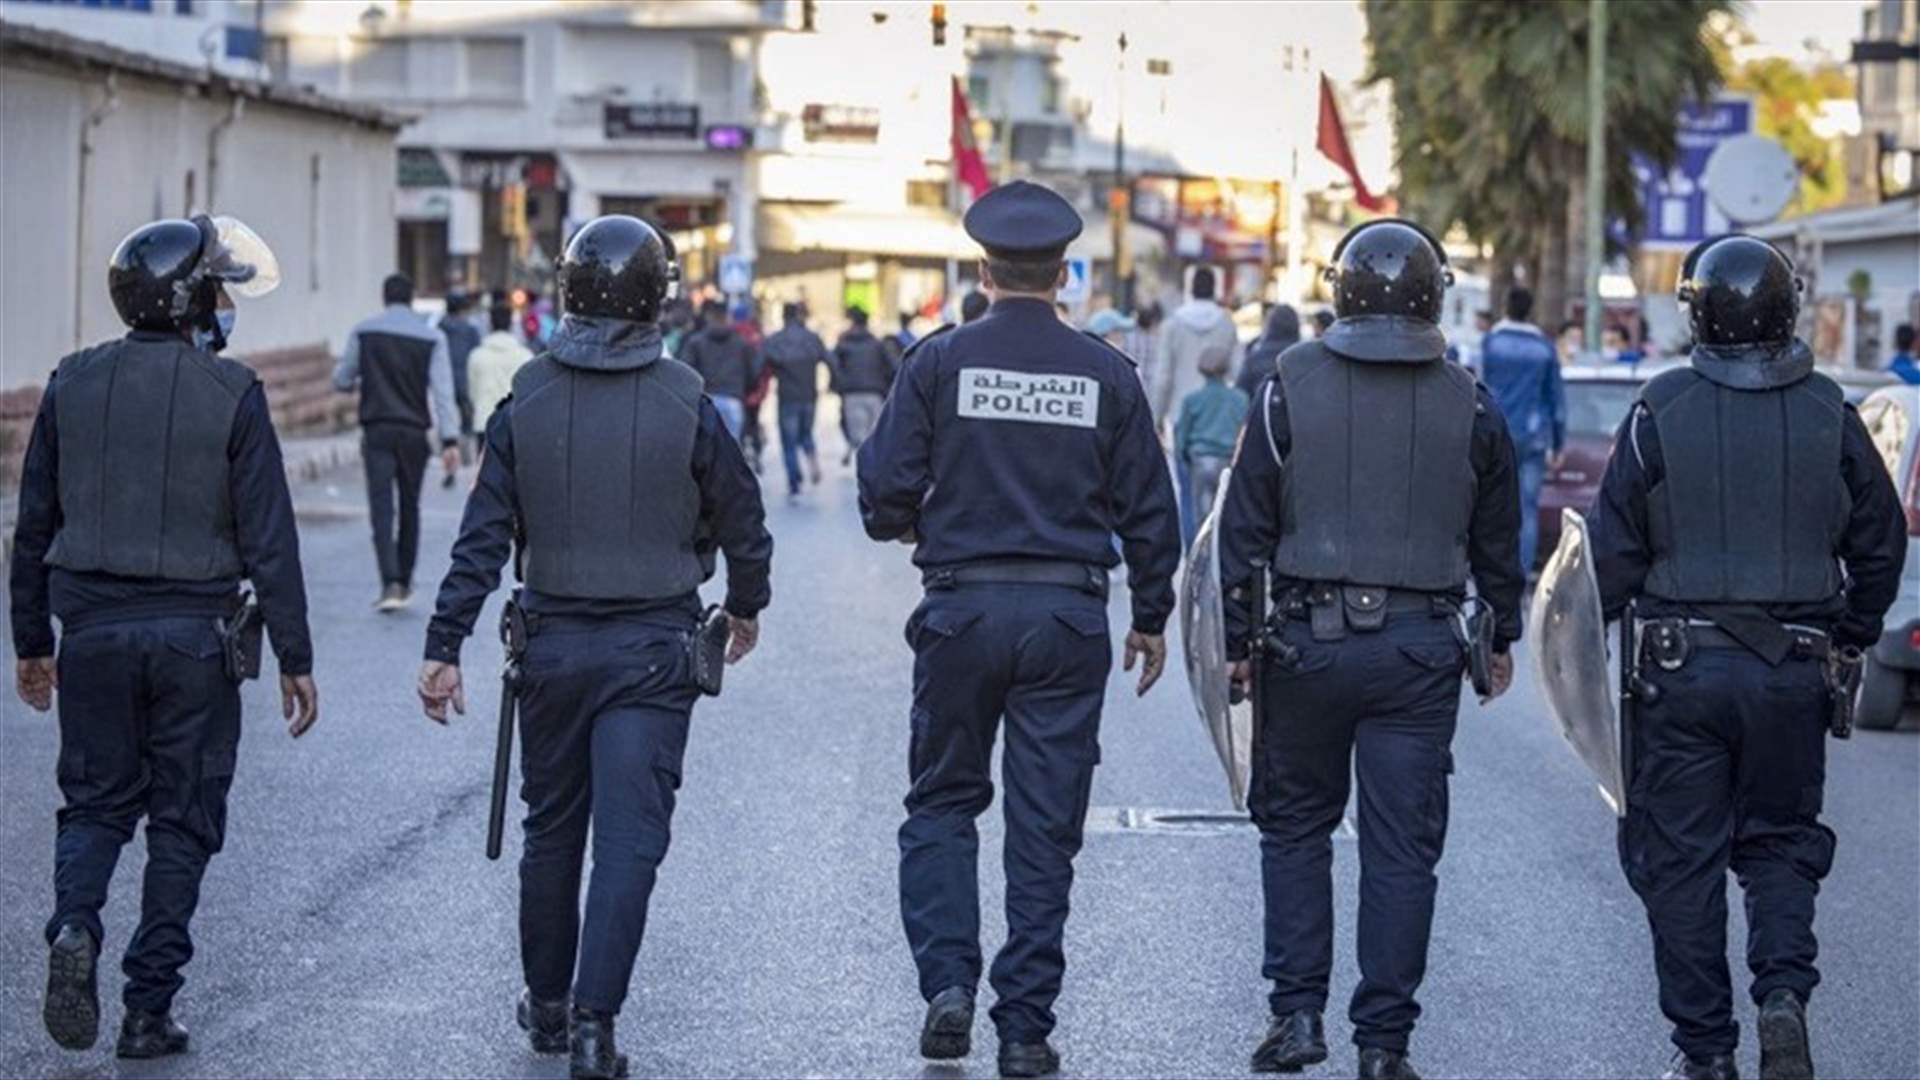 وفاة 19 شخصاً في المغرب بسبب تناولهم مشروبات كحولية فاسدة